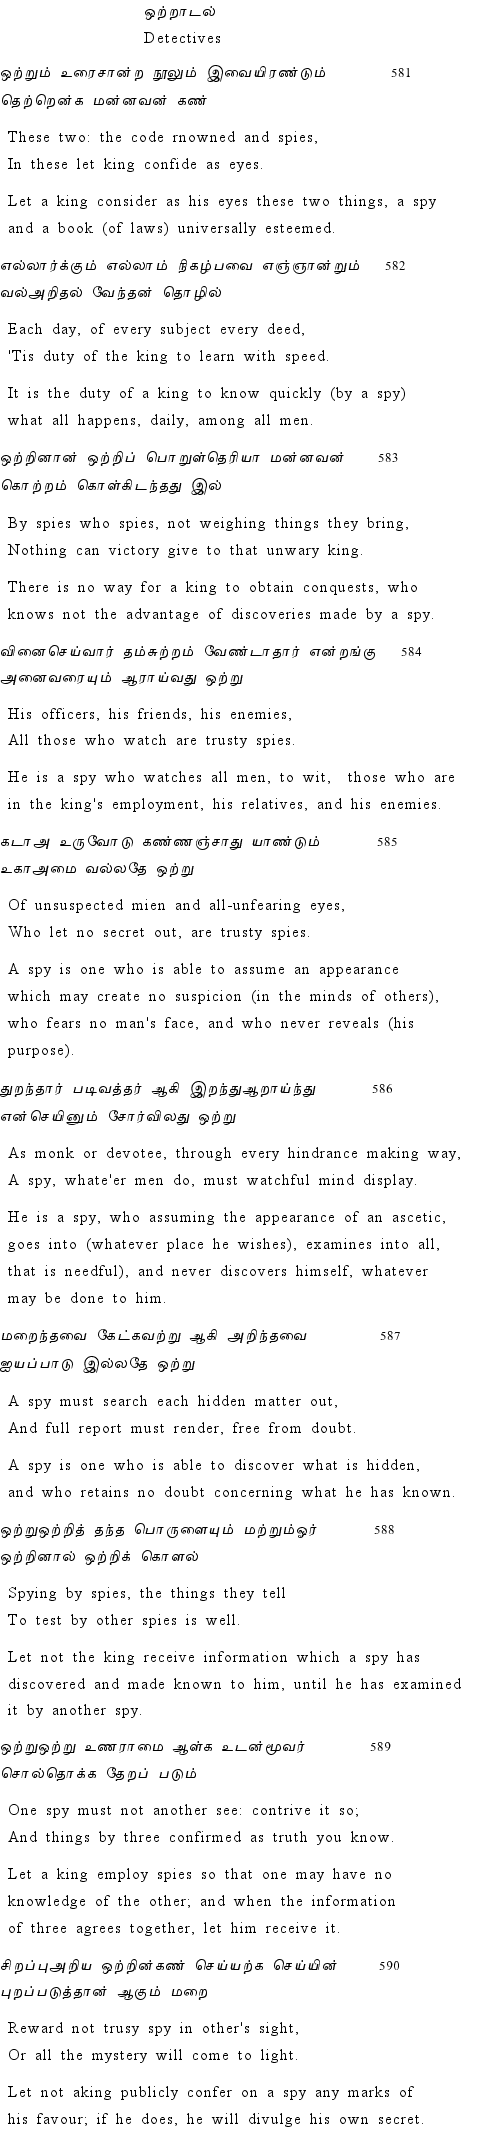 Text of Adhikaram 59